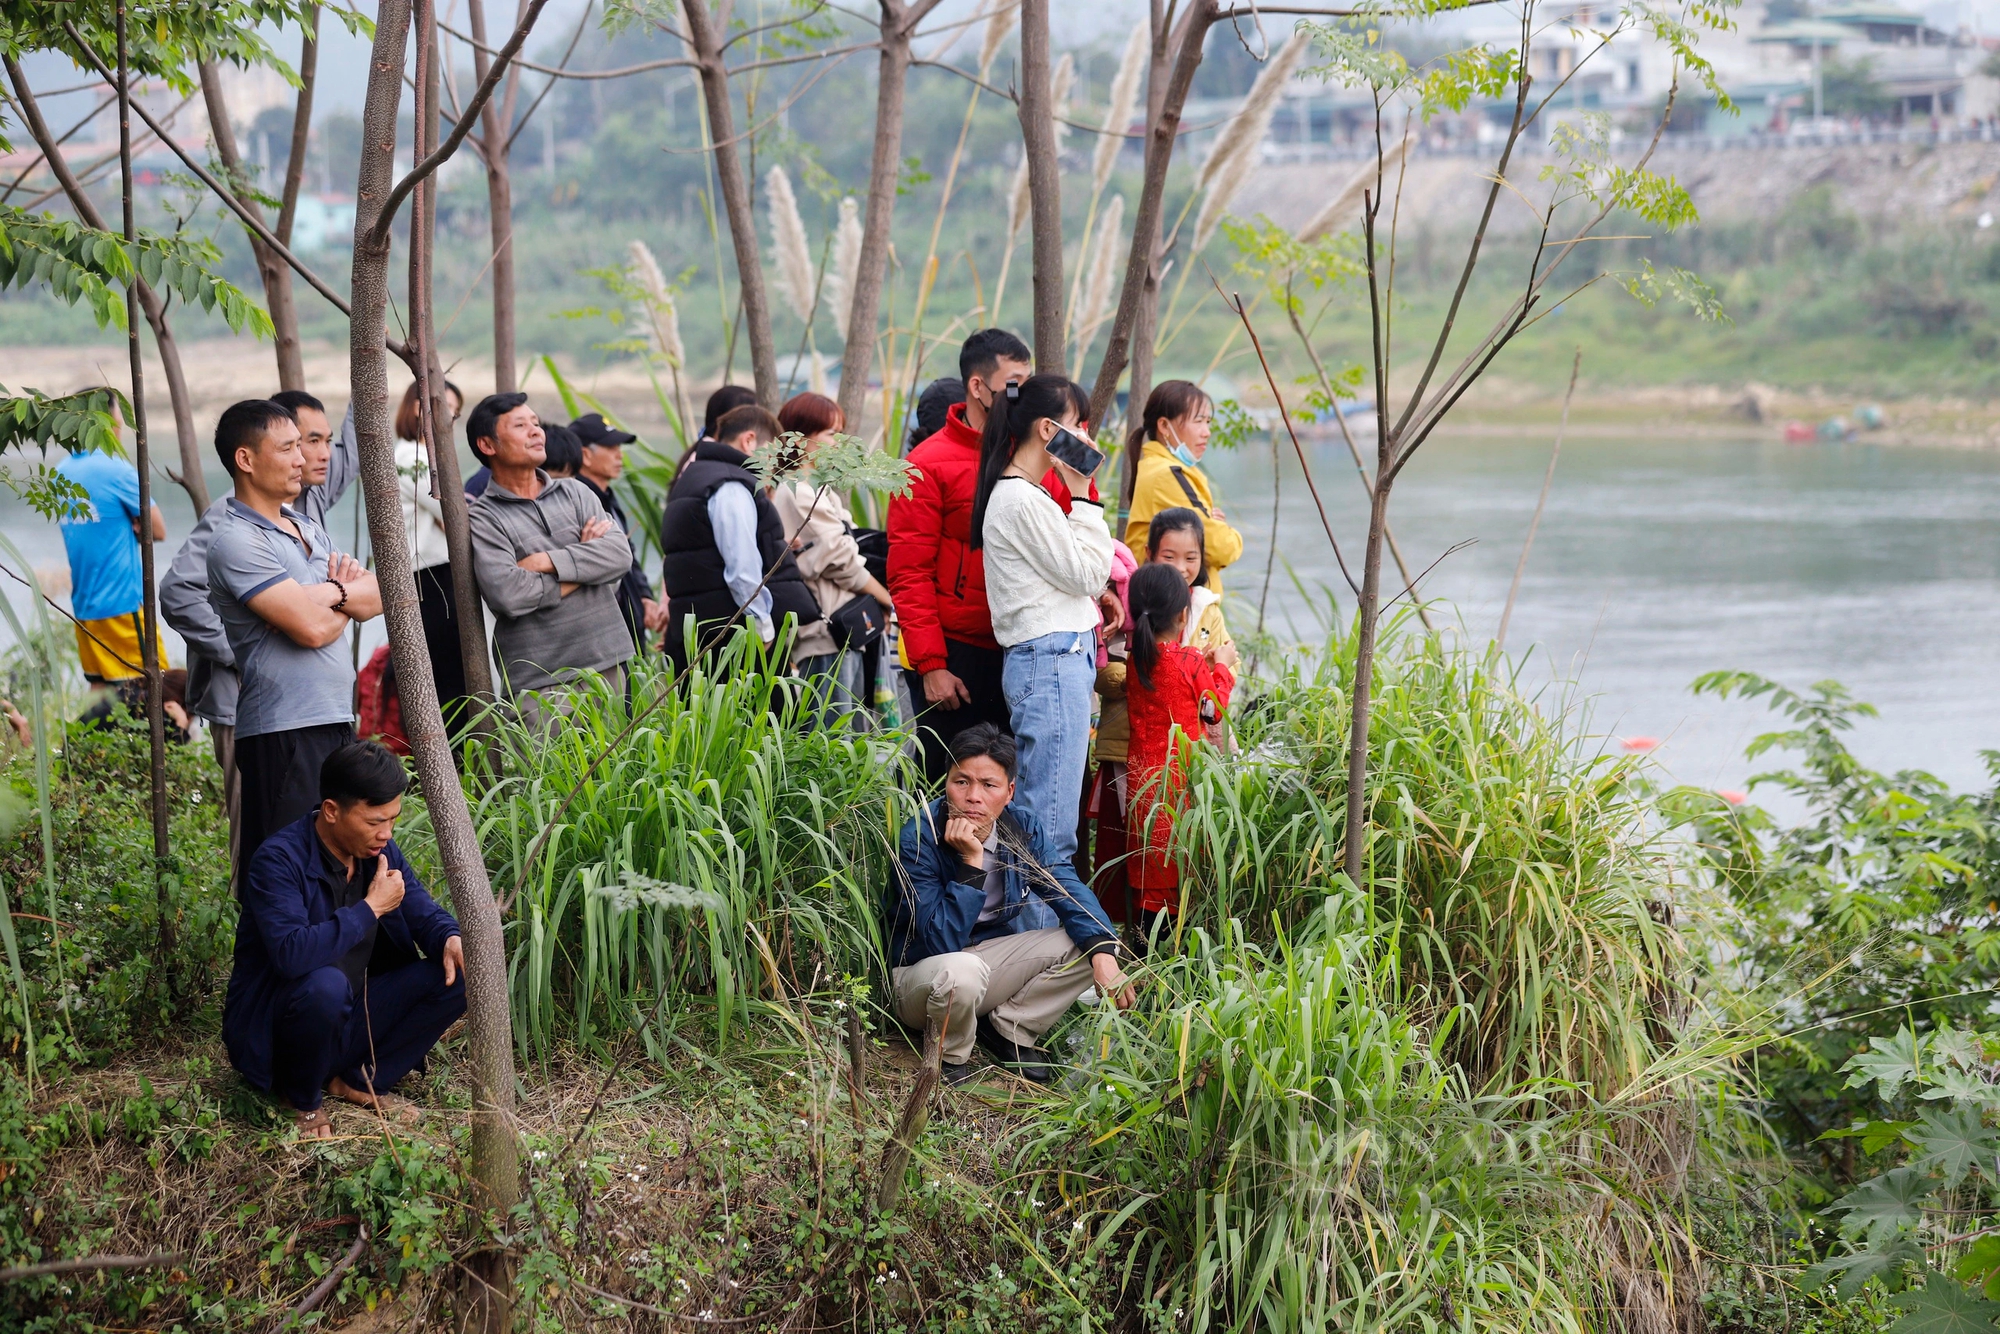 450 tay chải miền sơn cước gồng mình đua thuyền rồng trên sông Lô ở Tuyên Quang- Ảnh 8.